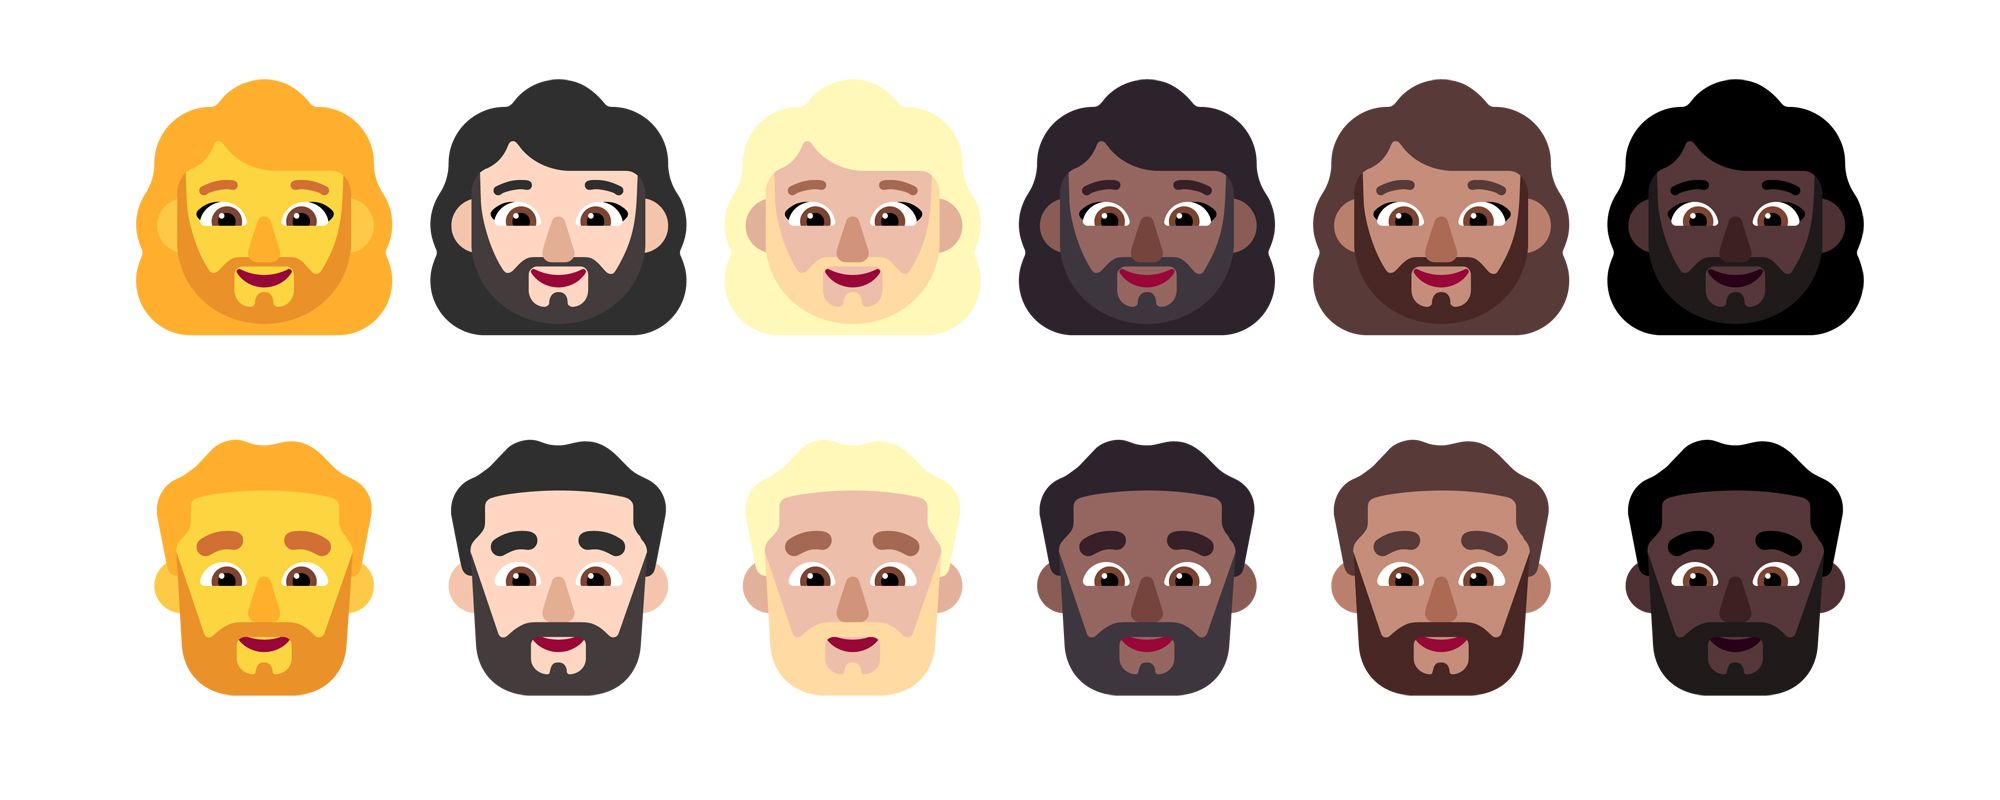 Emojiipedia-Windows-11-Nov-2021-Woman-with-Beard-Man-with-Beard-1